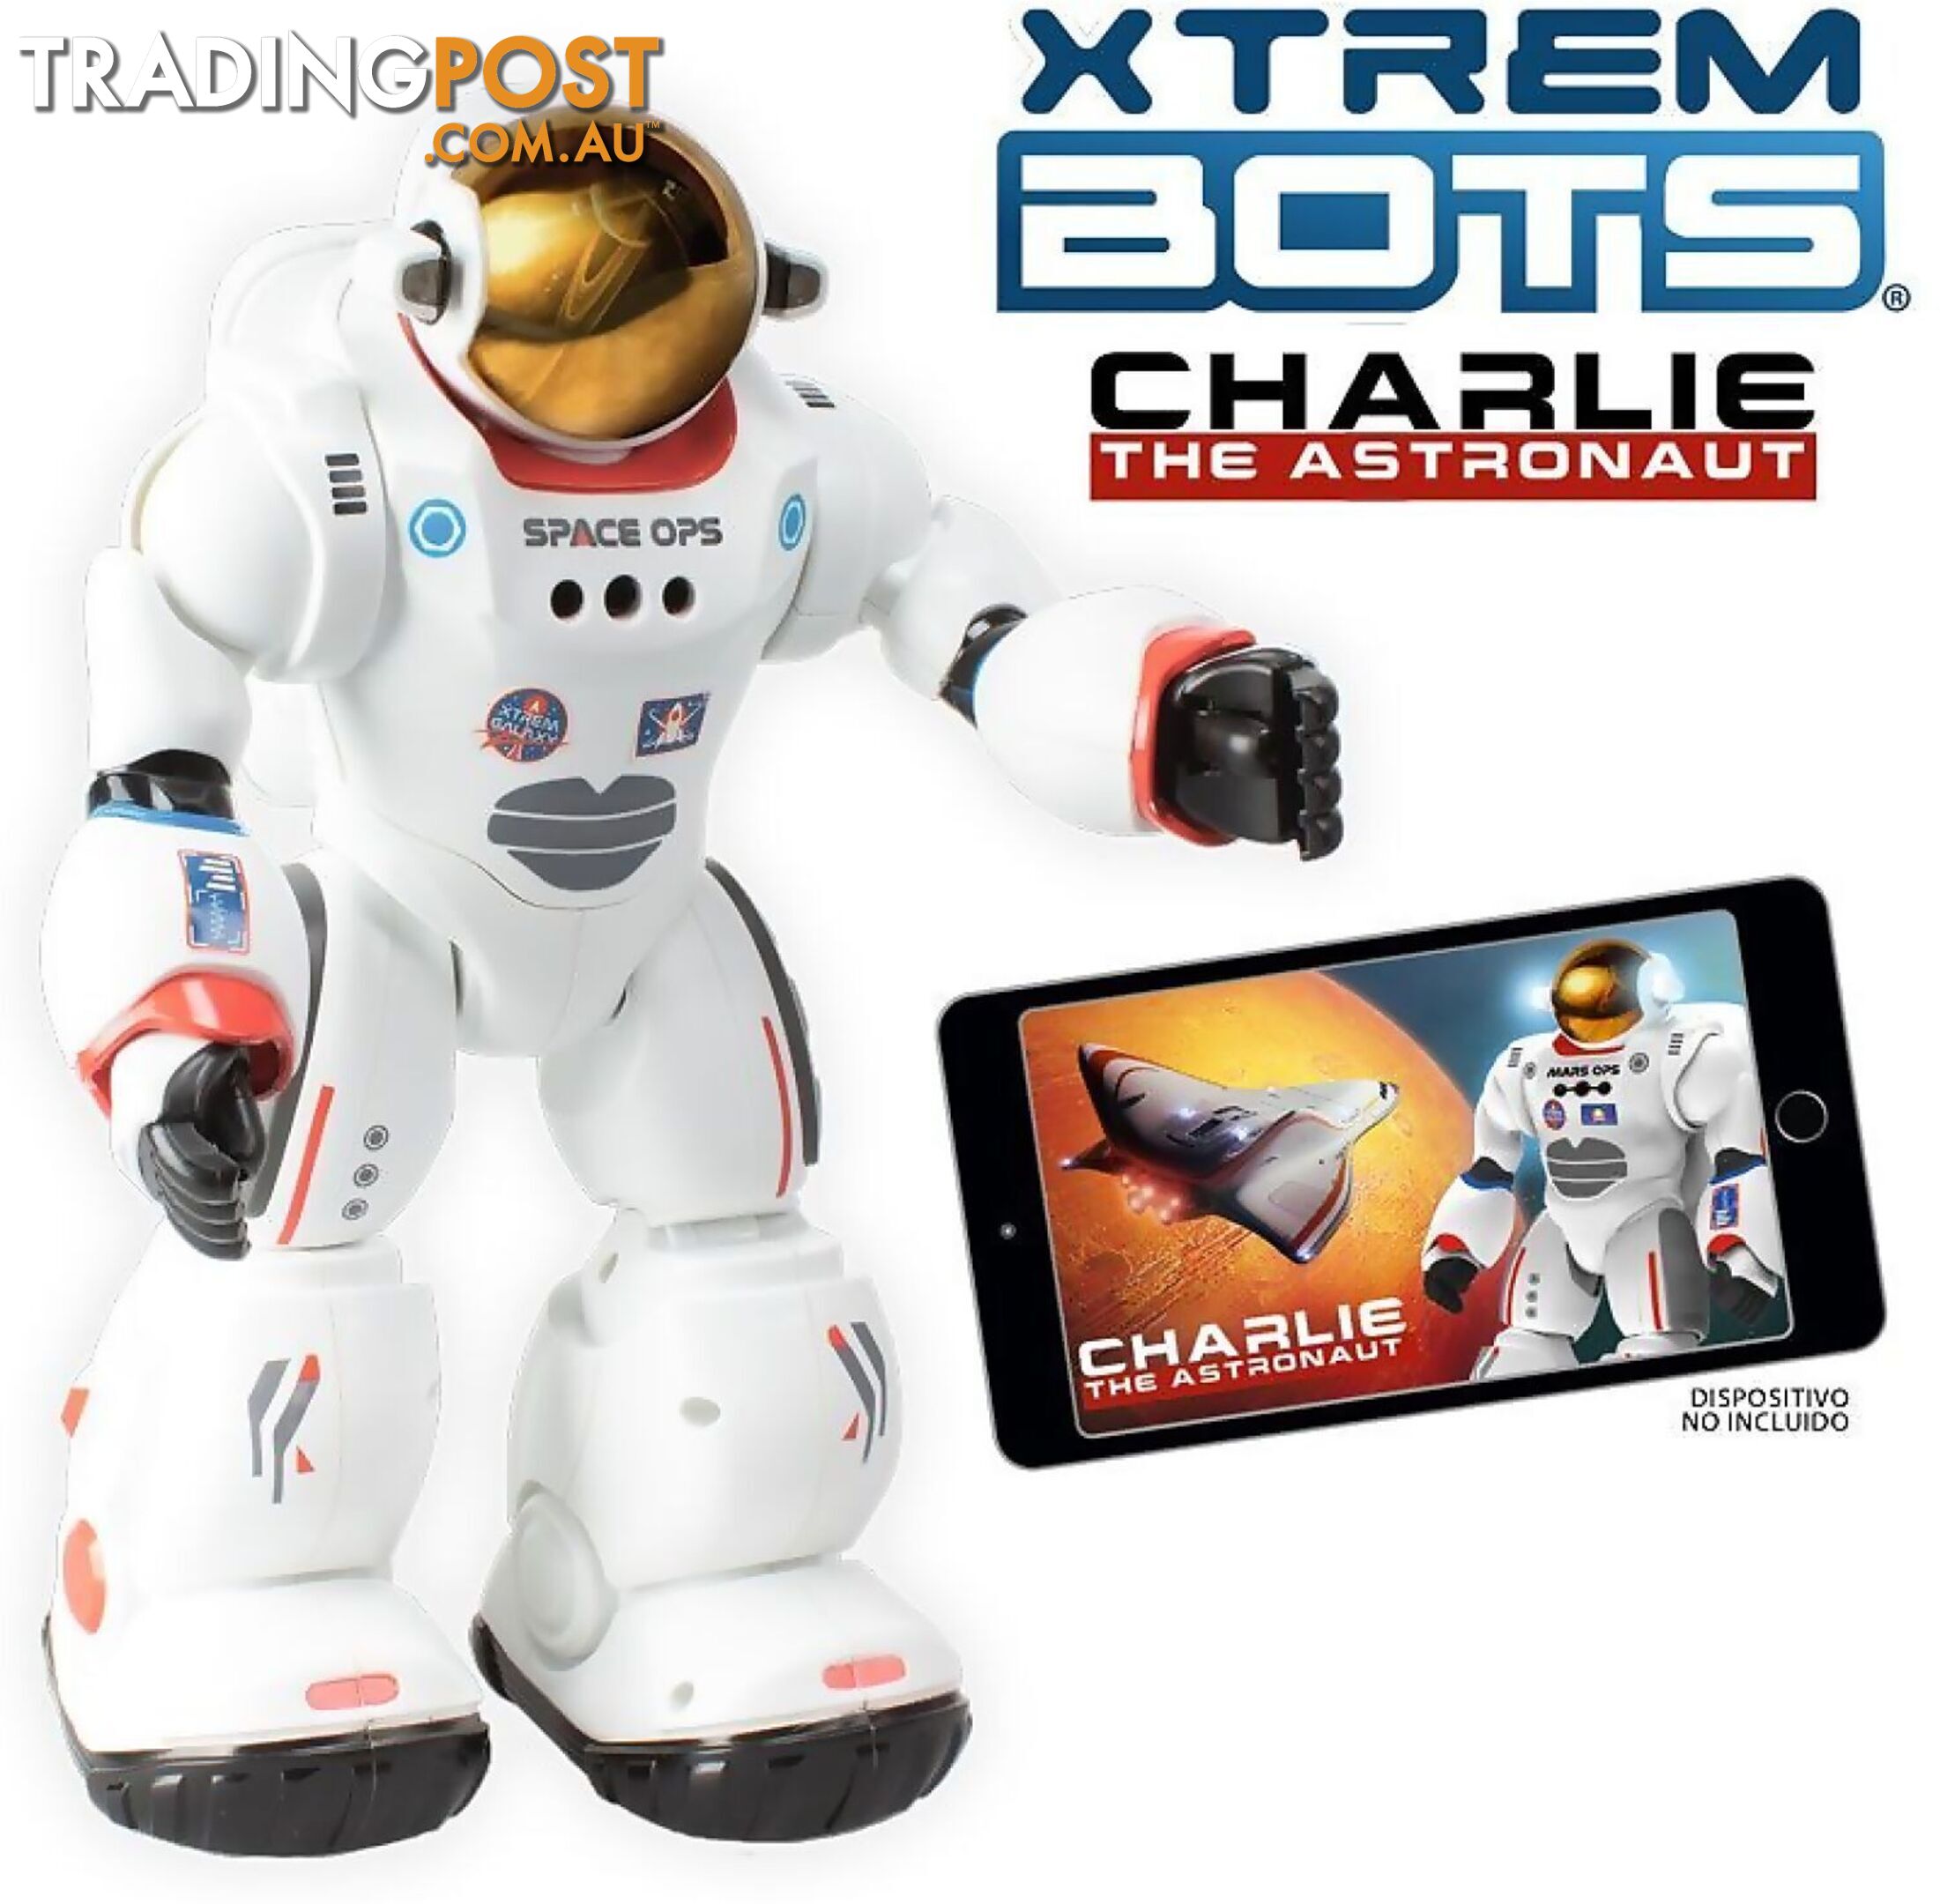 Xtrem Bots - Charlie The Astronaut - Gdlsxt3803085 - 8436598030853